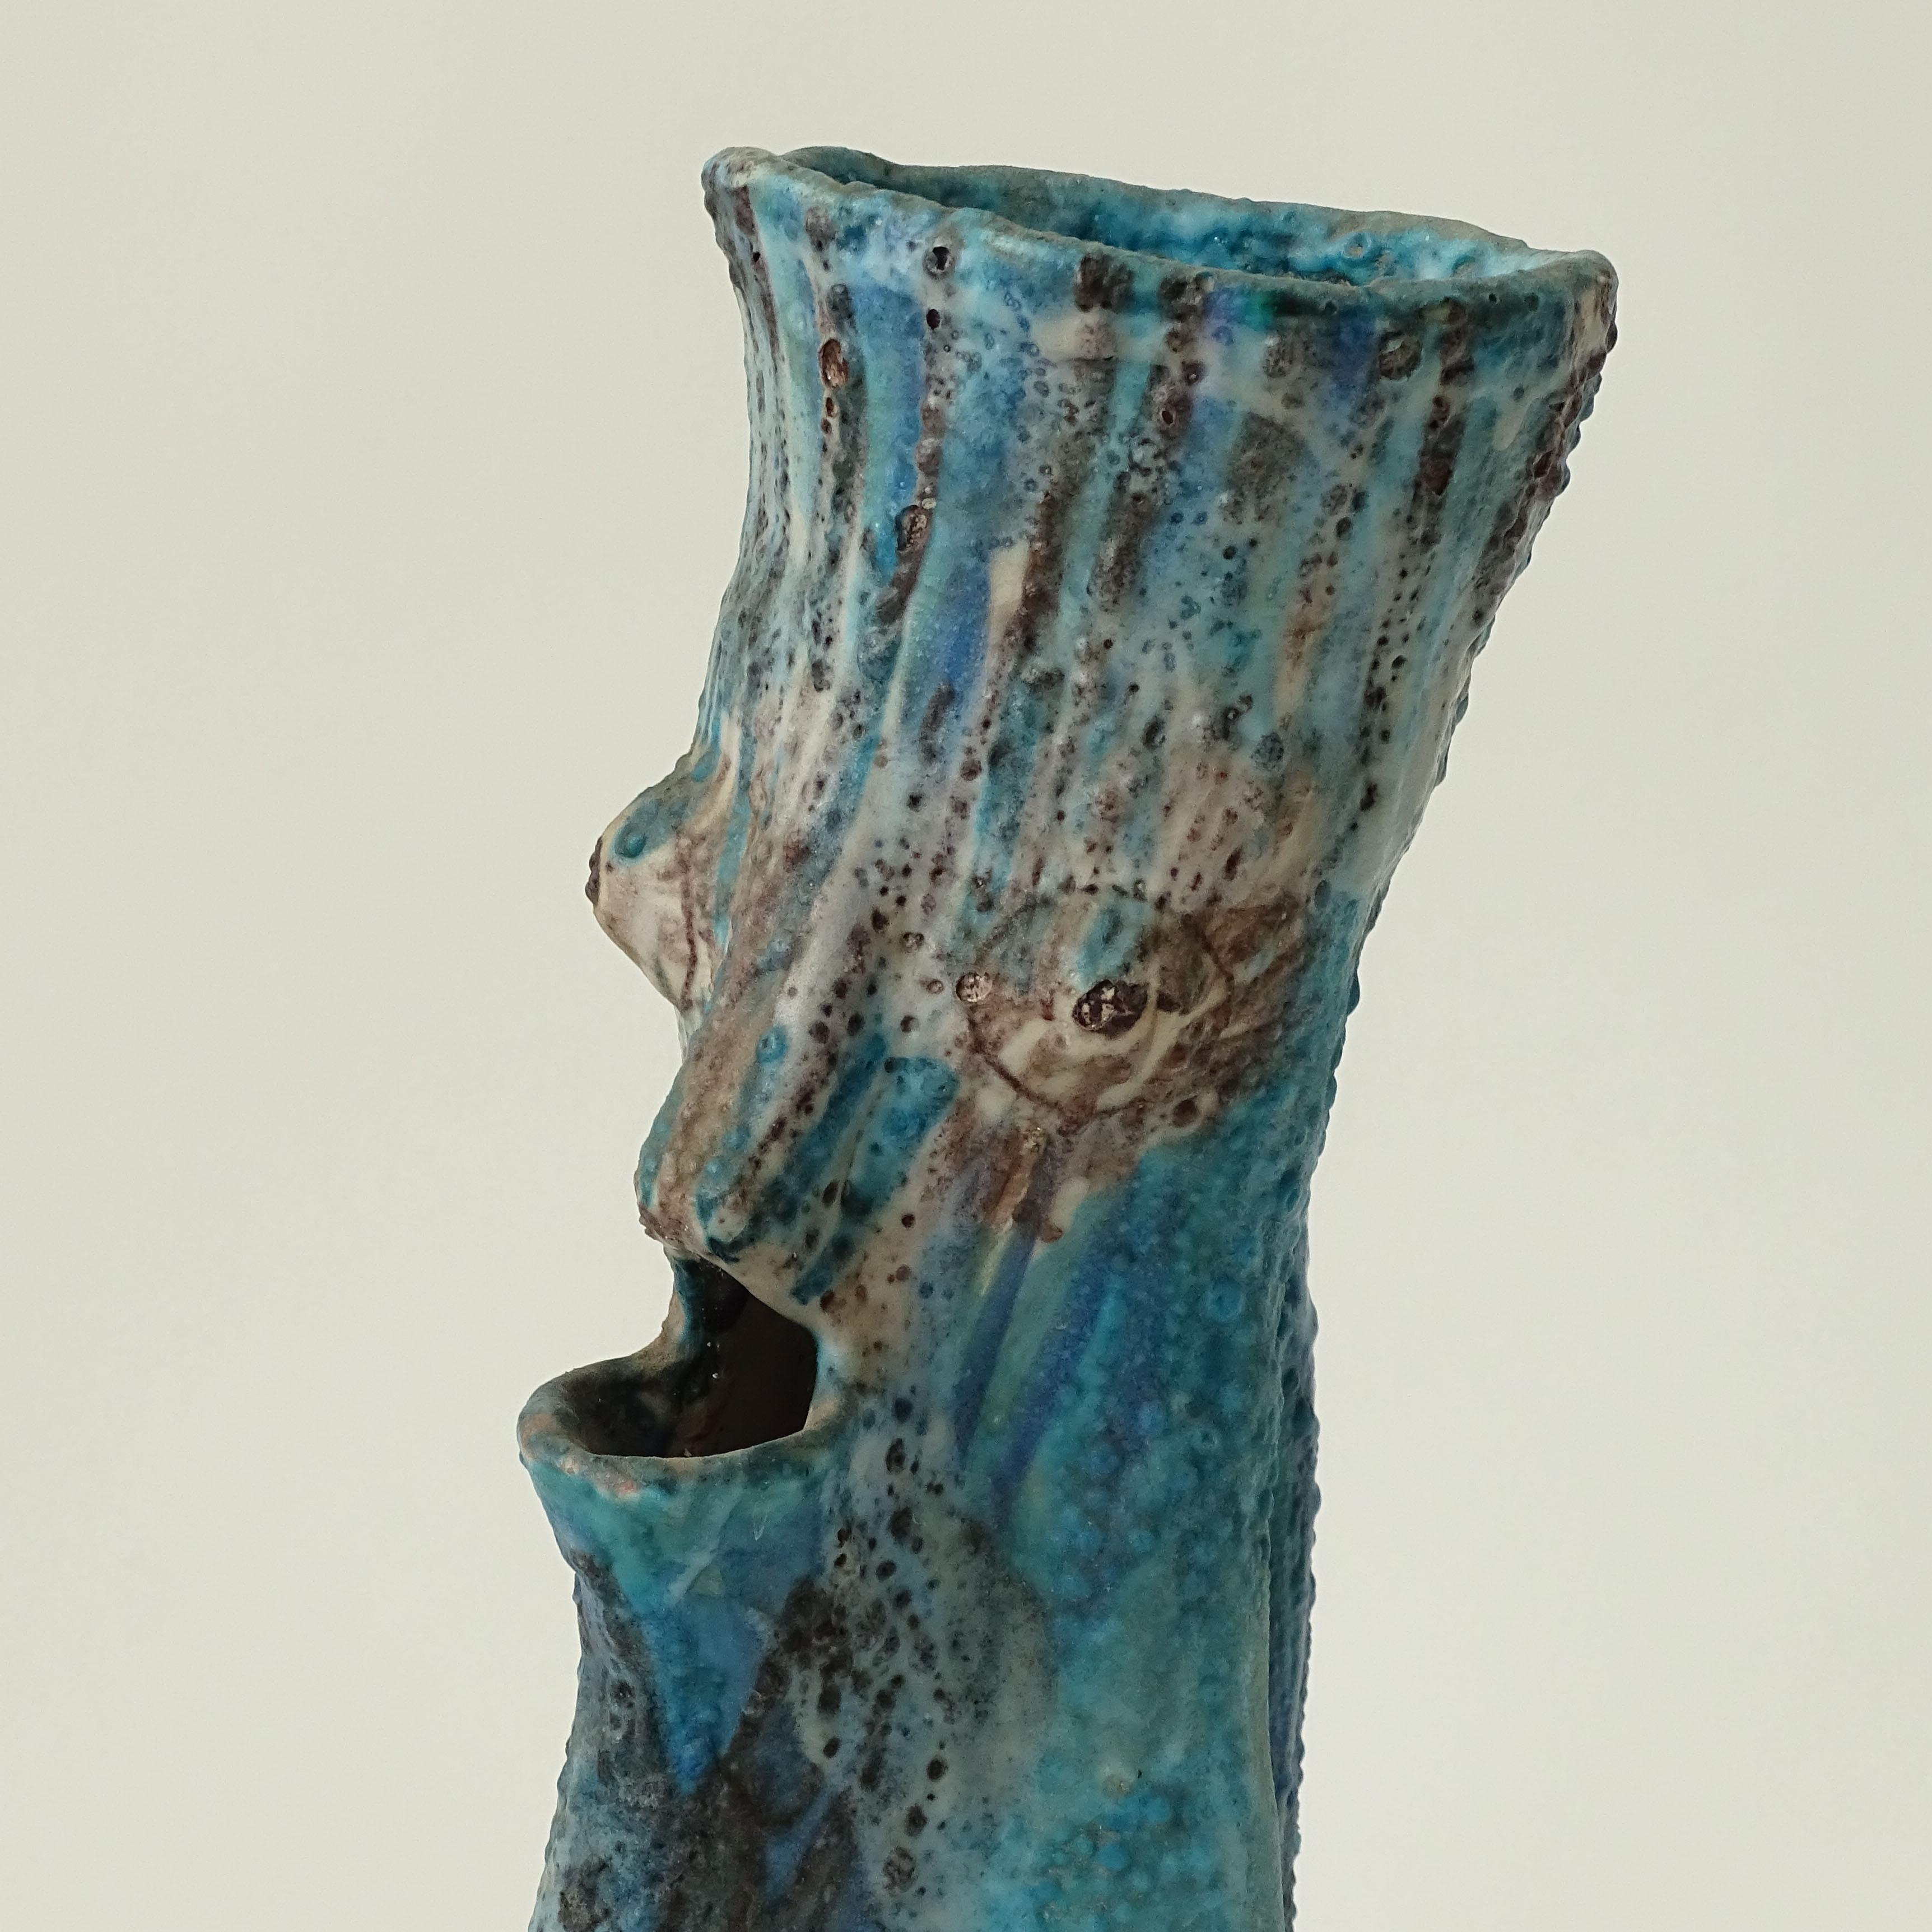 Vase figuratif grotesque en forme de cruche.
Ceramiche Artistiche Solimene, Vietri,
Faïence, émaillée bleu turquoise et violet sur blanc.
Marqué : C.A.S. VIETRI ITALY.